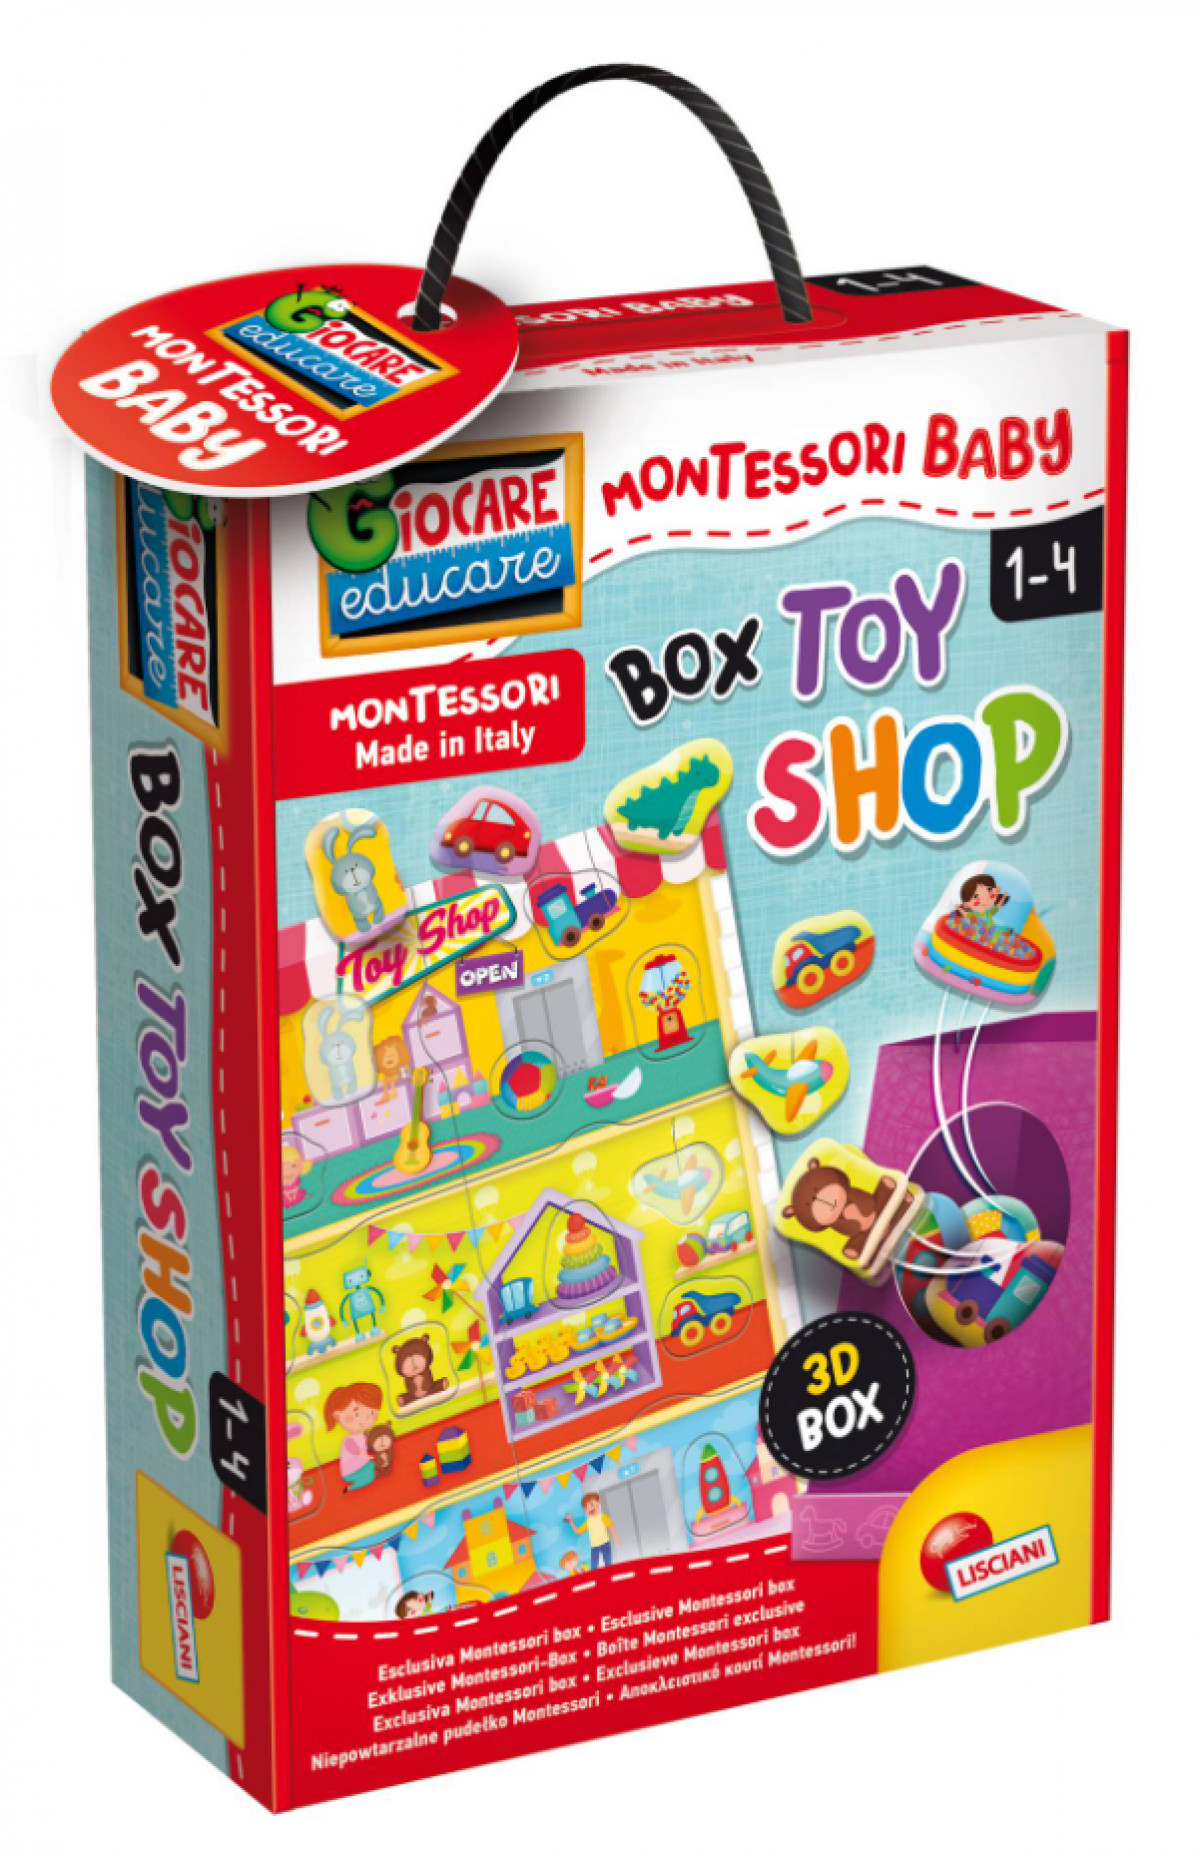 Box Toy Shop 1-4A - Boutique Toup'tibou - photo 6